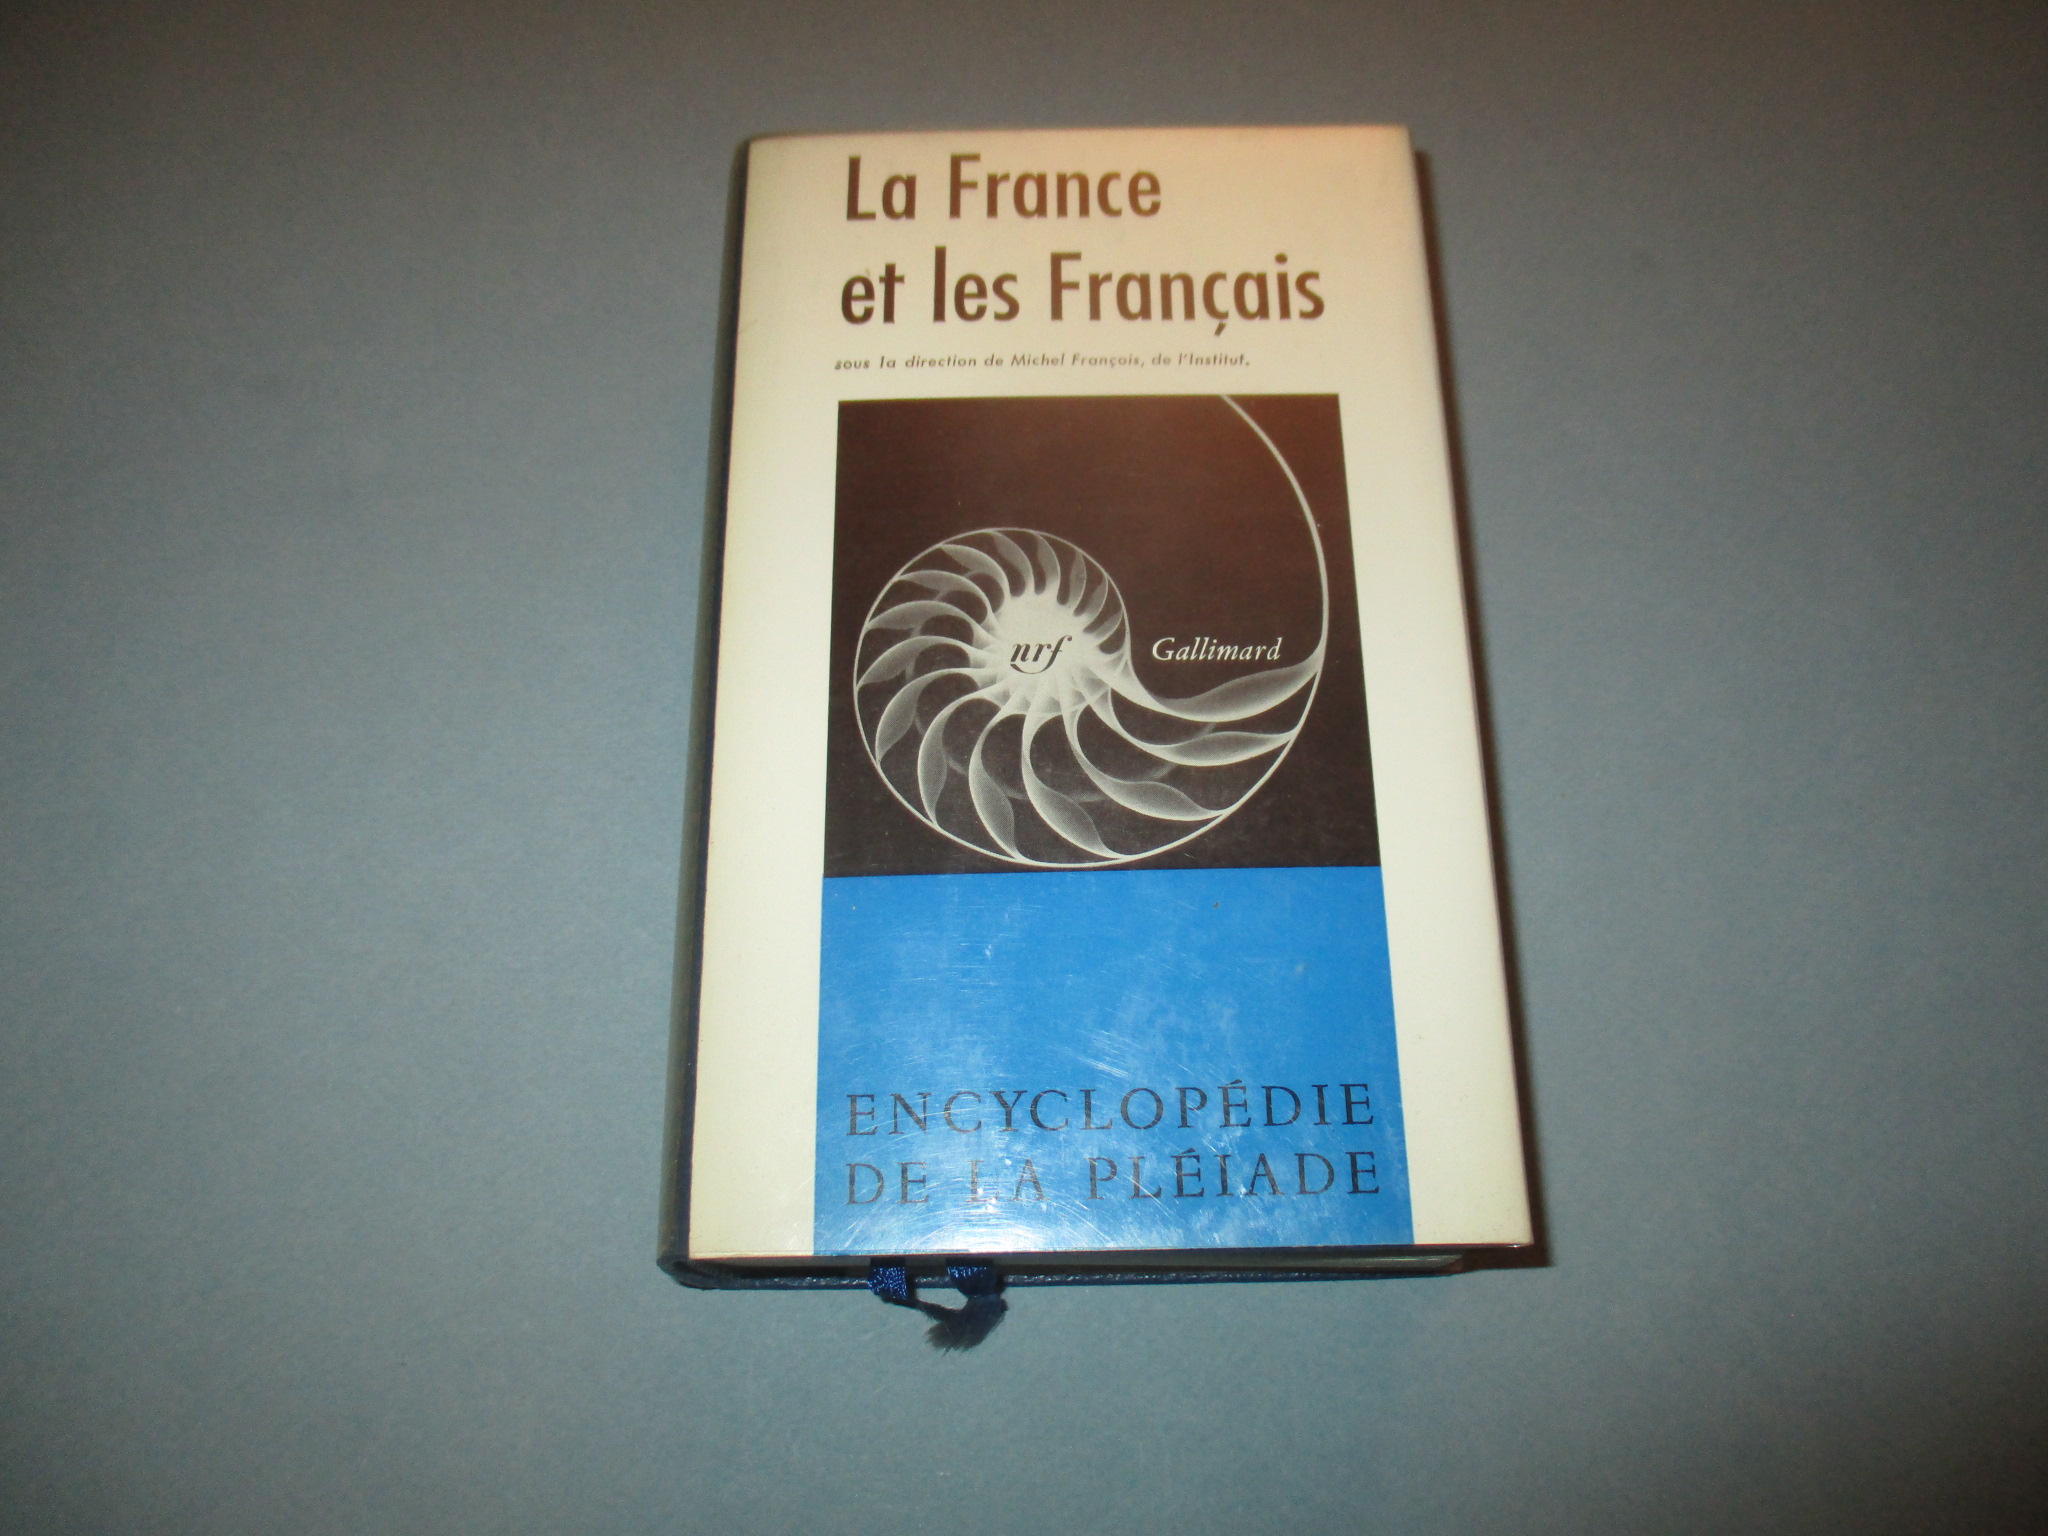 La France et les Français, Encyclopédie de la Pléiade 1972